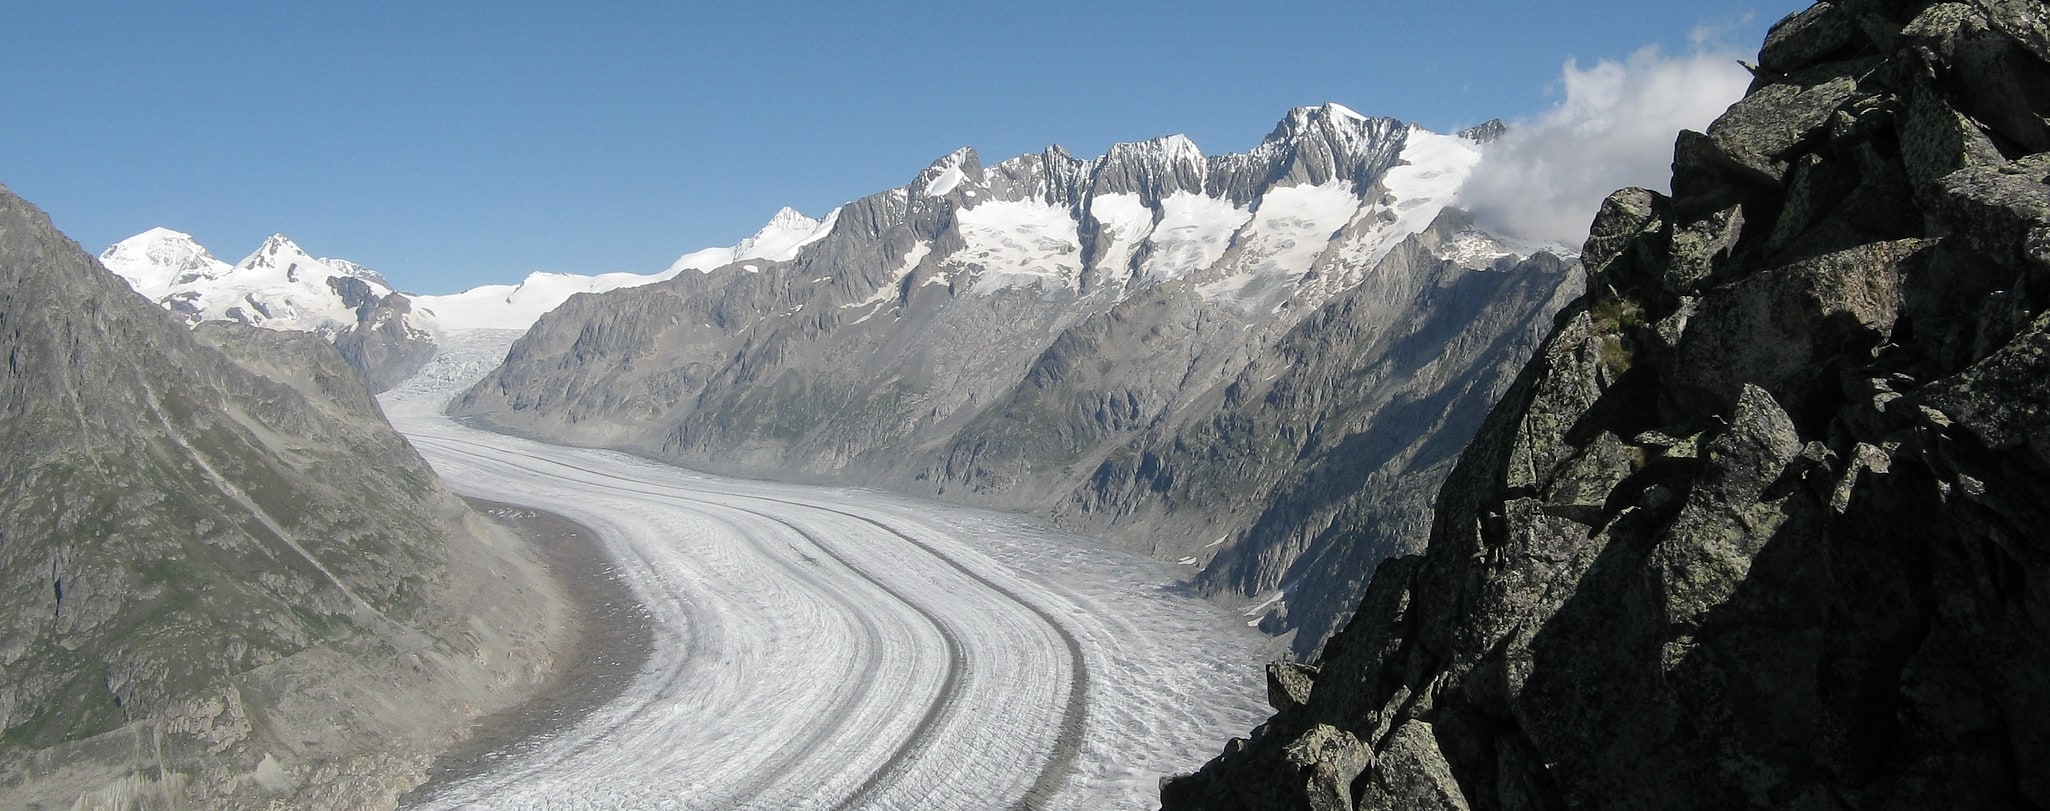 Swiss Alps Jungfrau-Aletsch, Szwajcaria